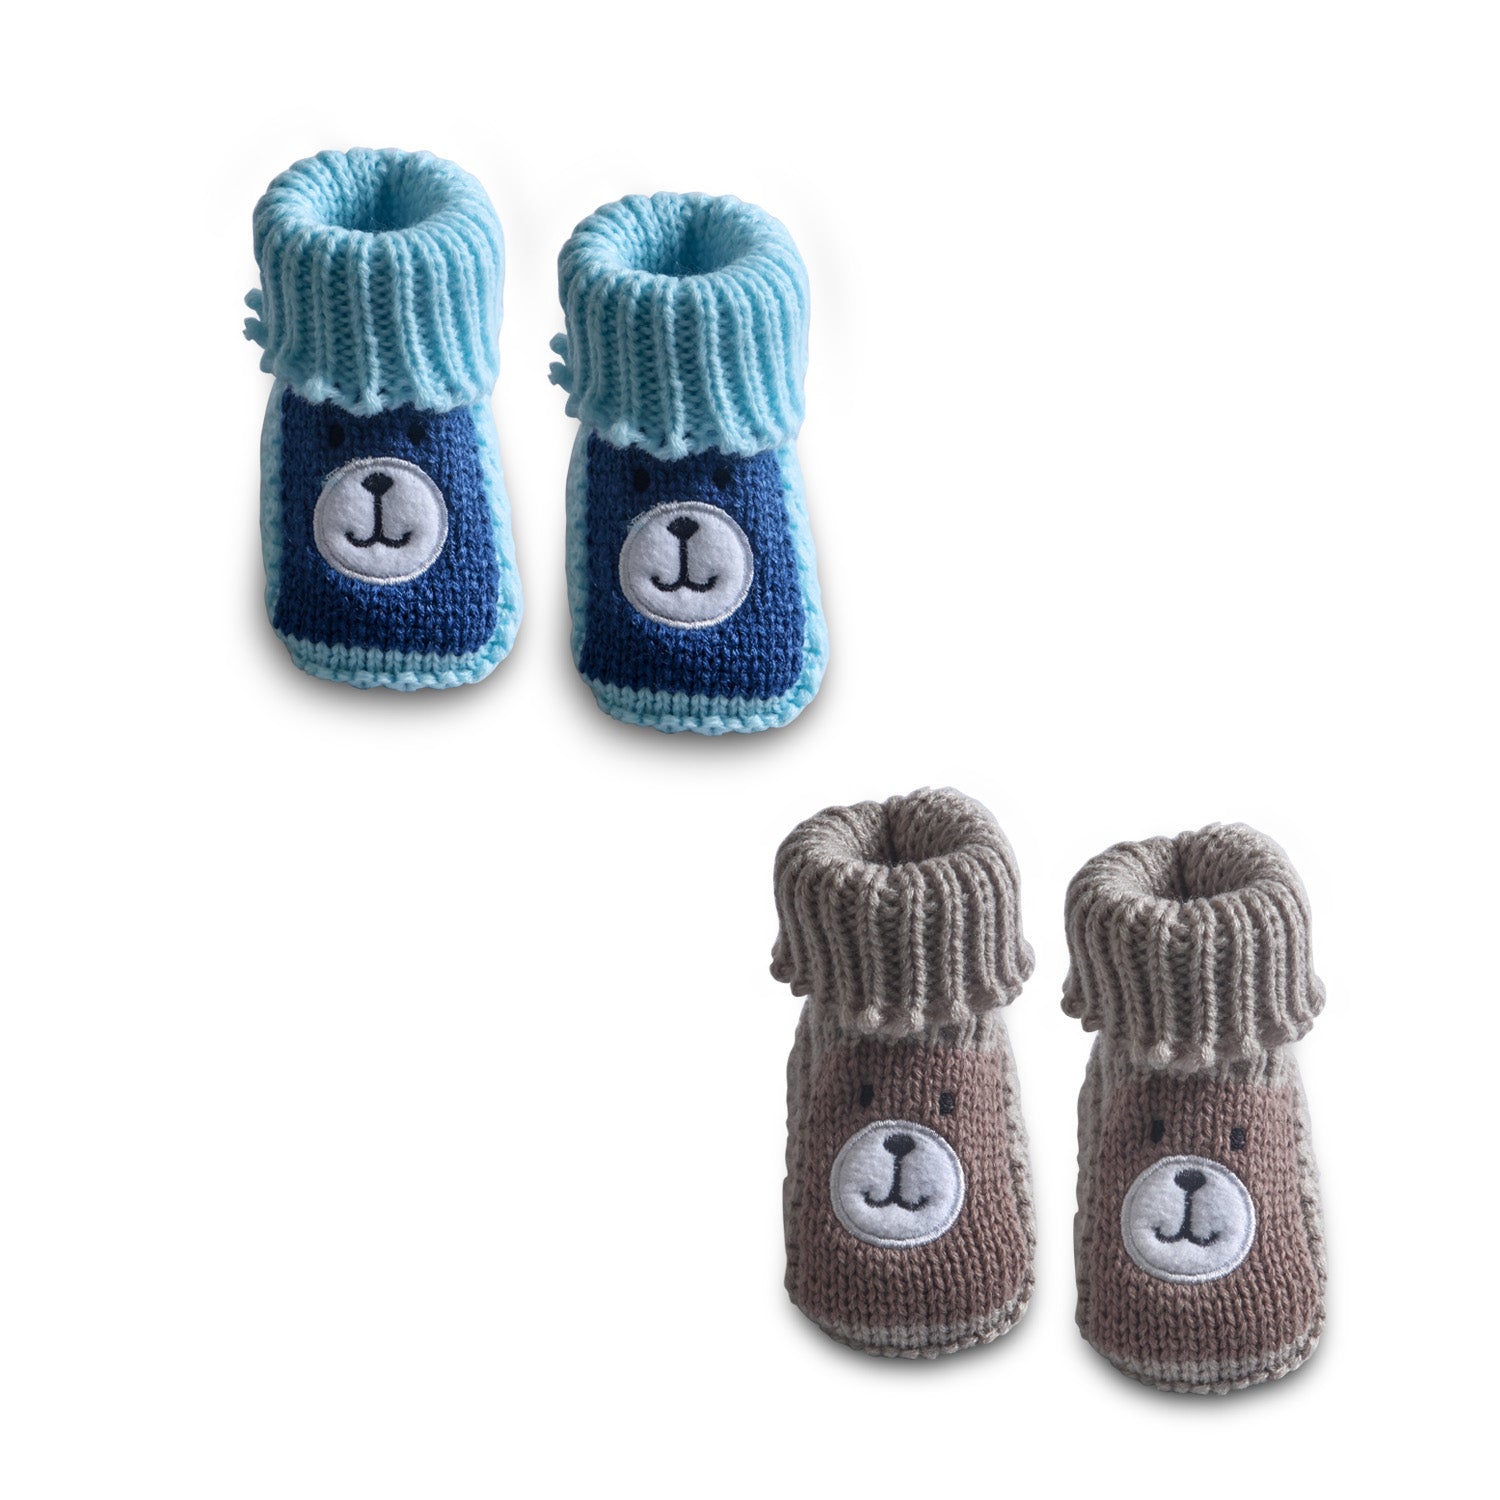 Newborn Crochet Woollen Booties Teddy - Blue, Beige